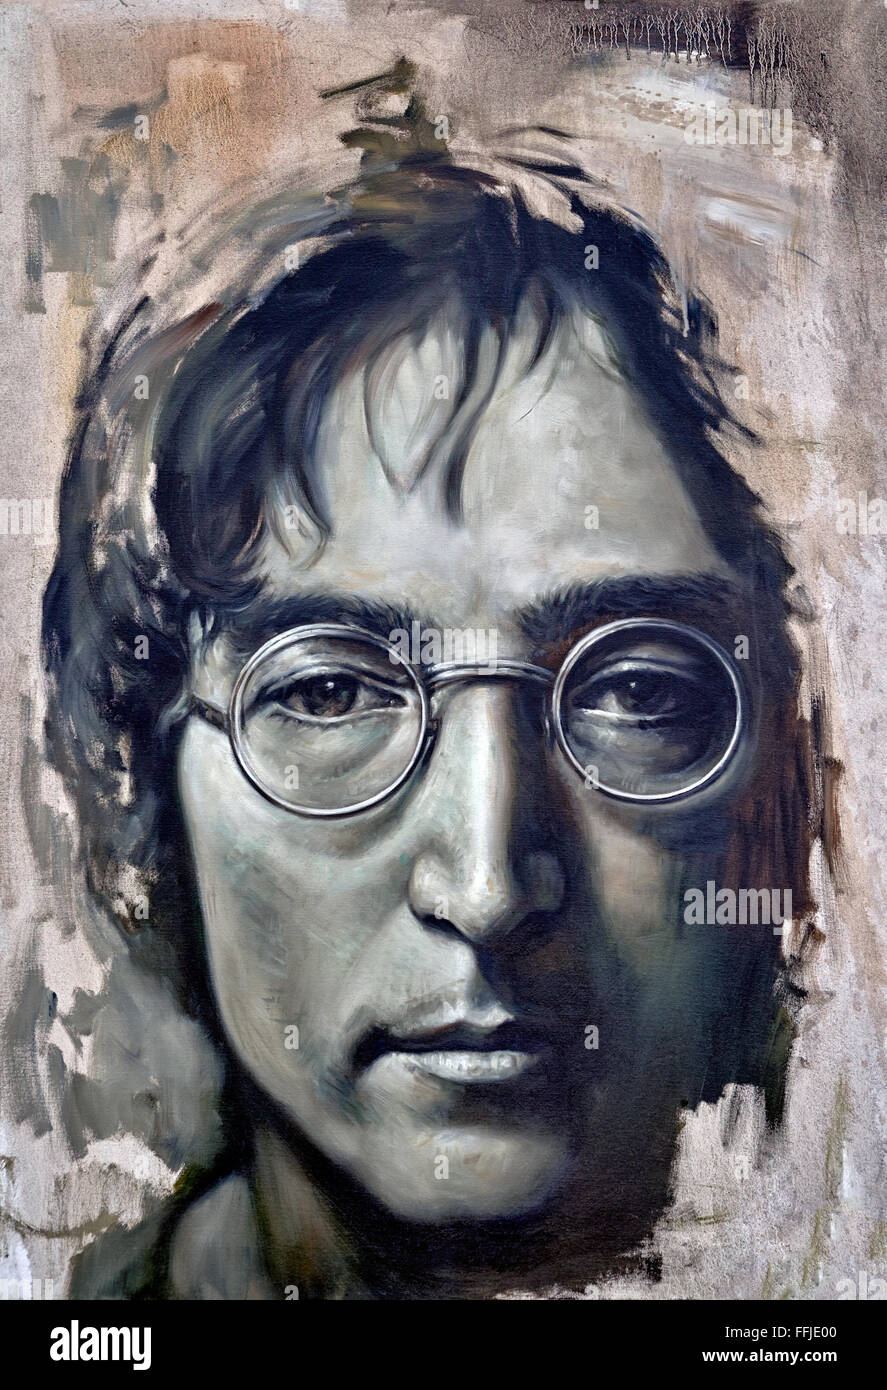 Unfinished painting portrait of John Lennon. Stock Photo